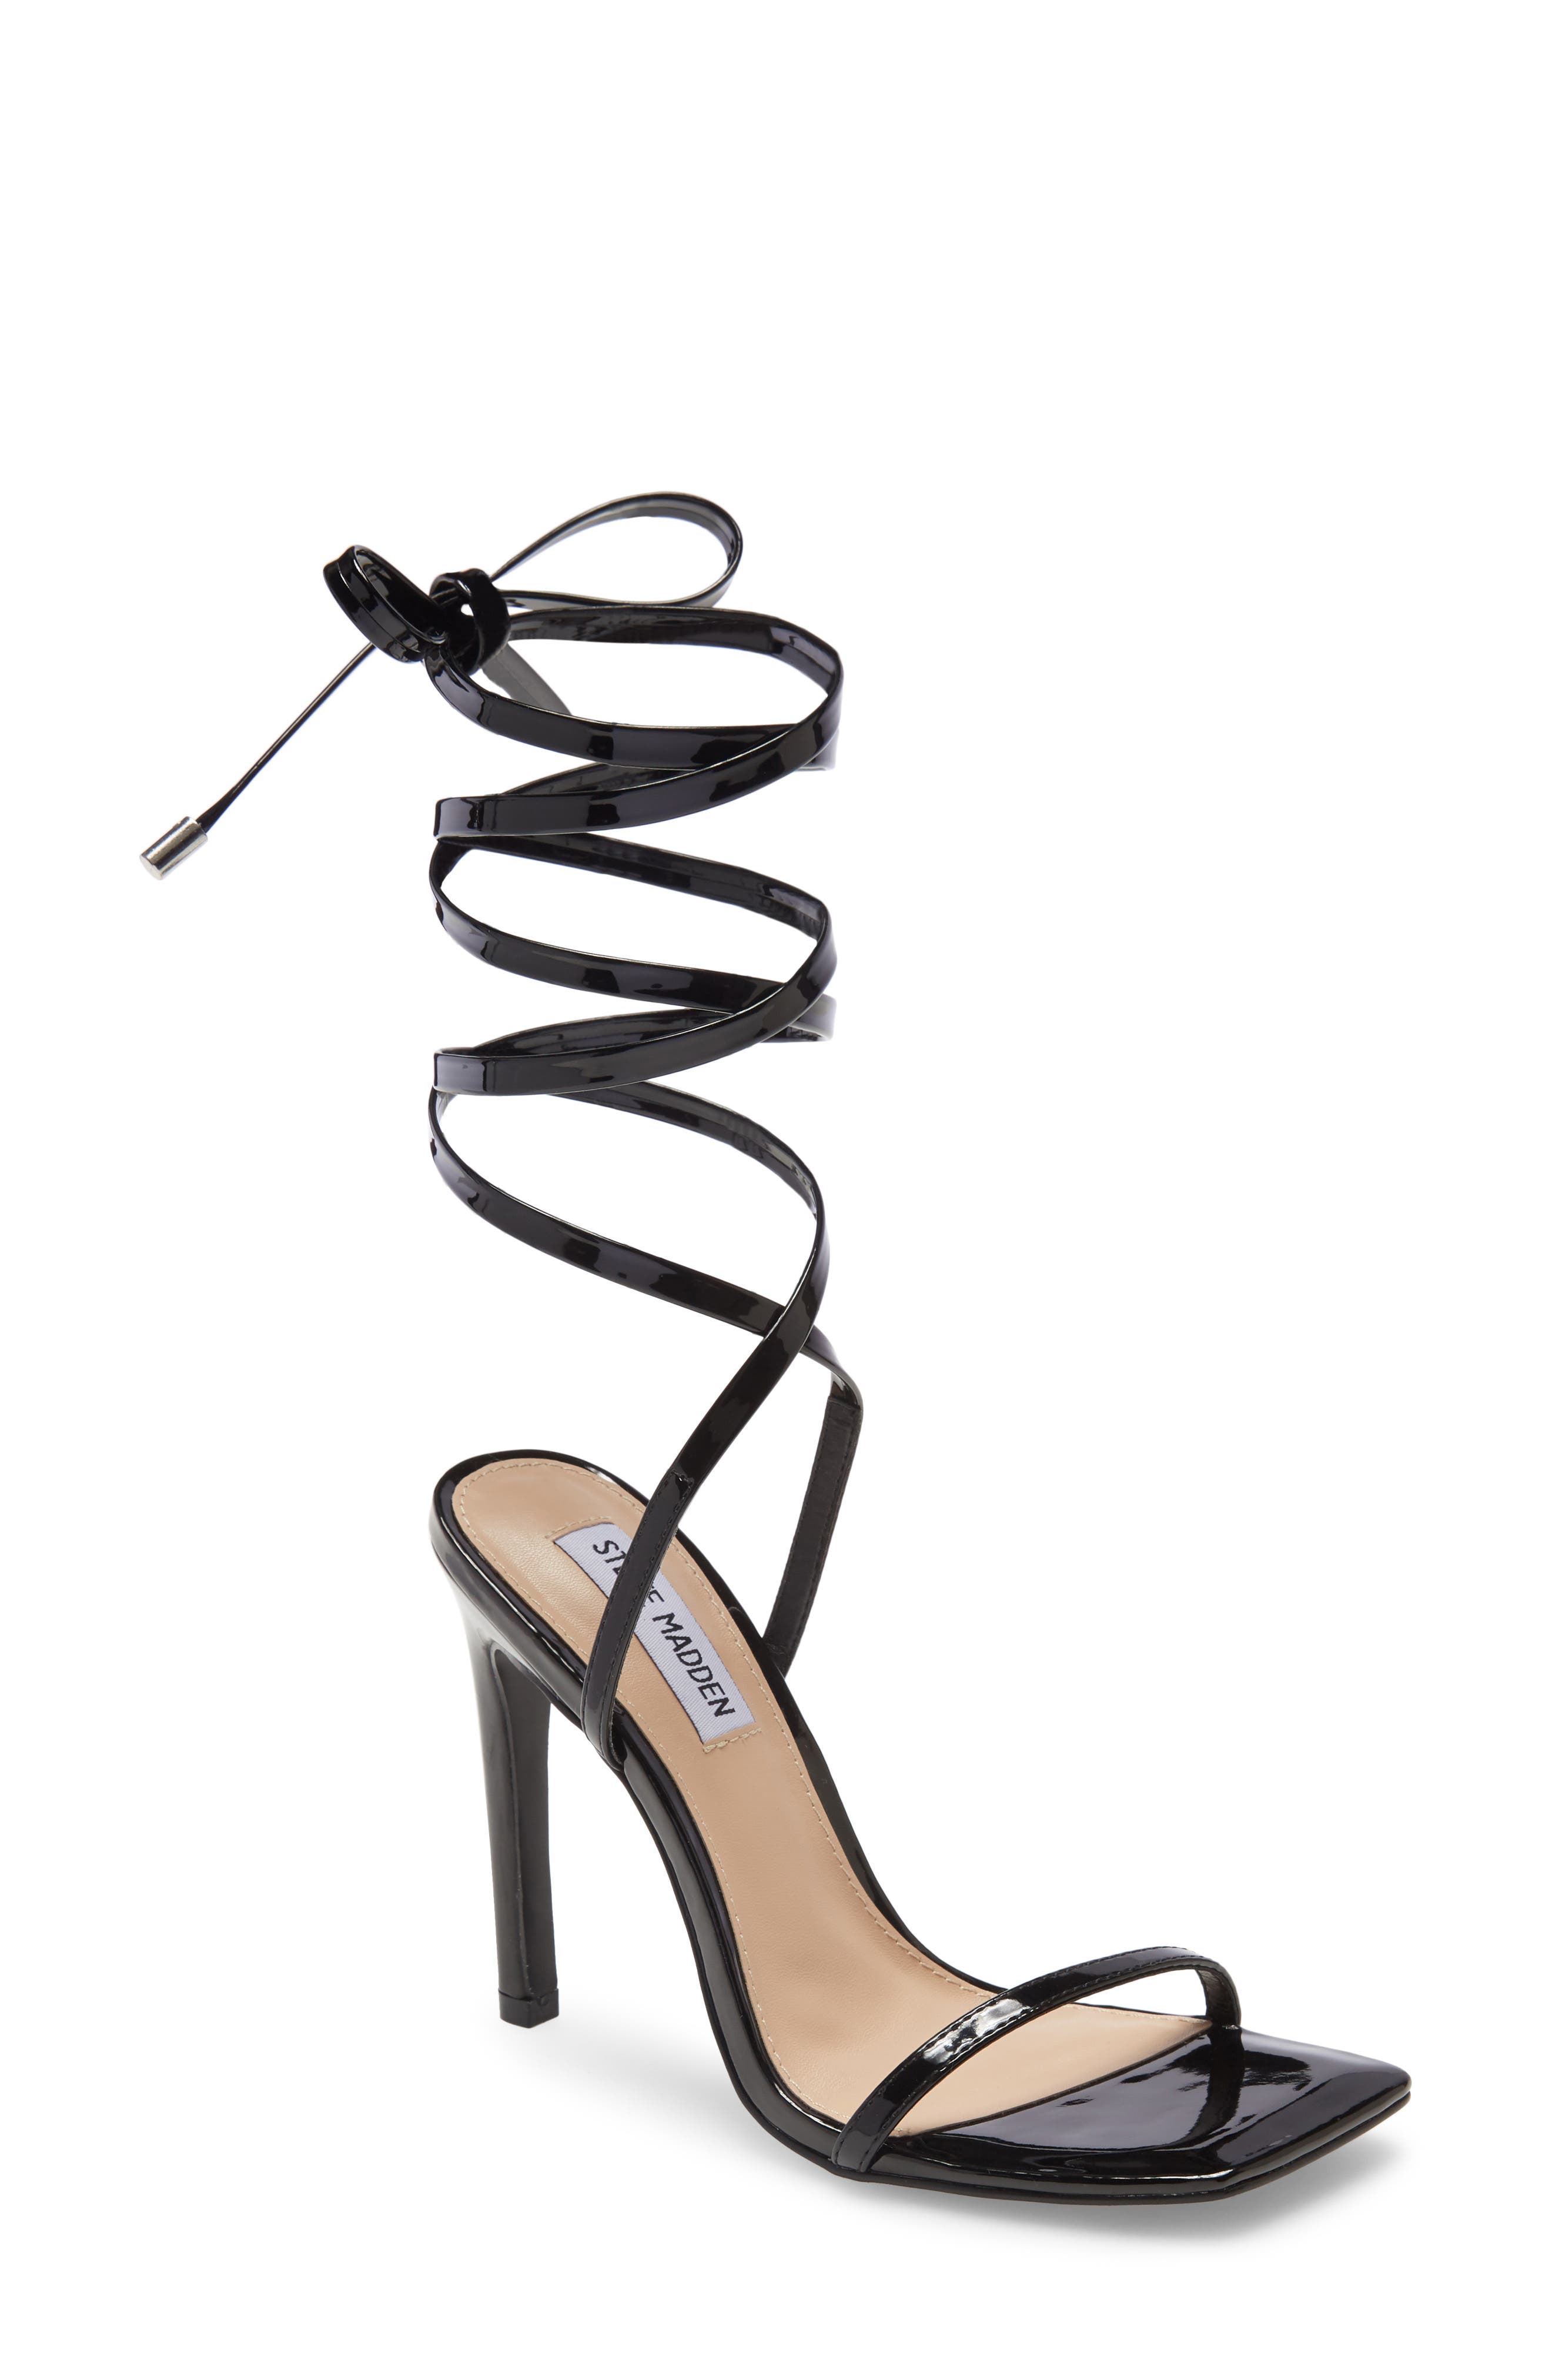 Buy > nordstrom shoes womens heels > in stock